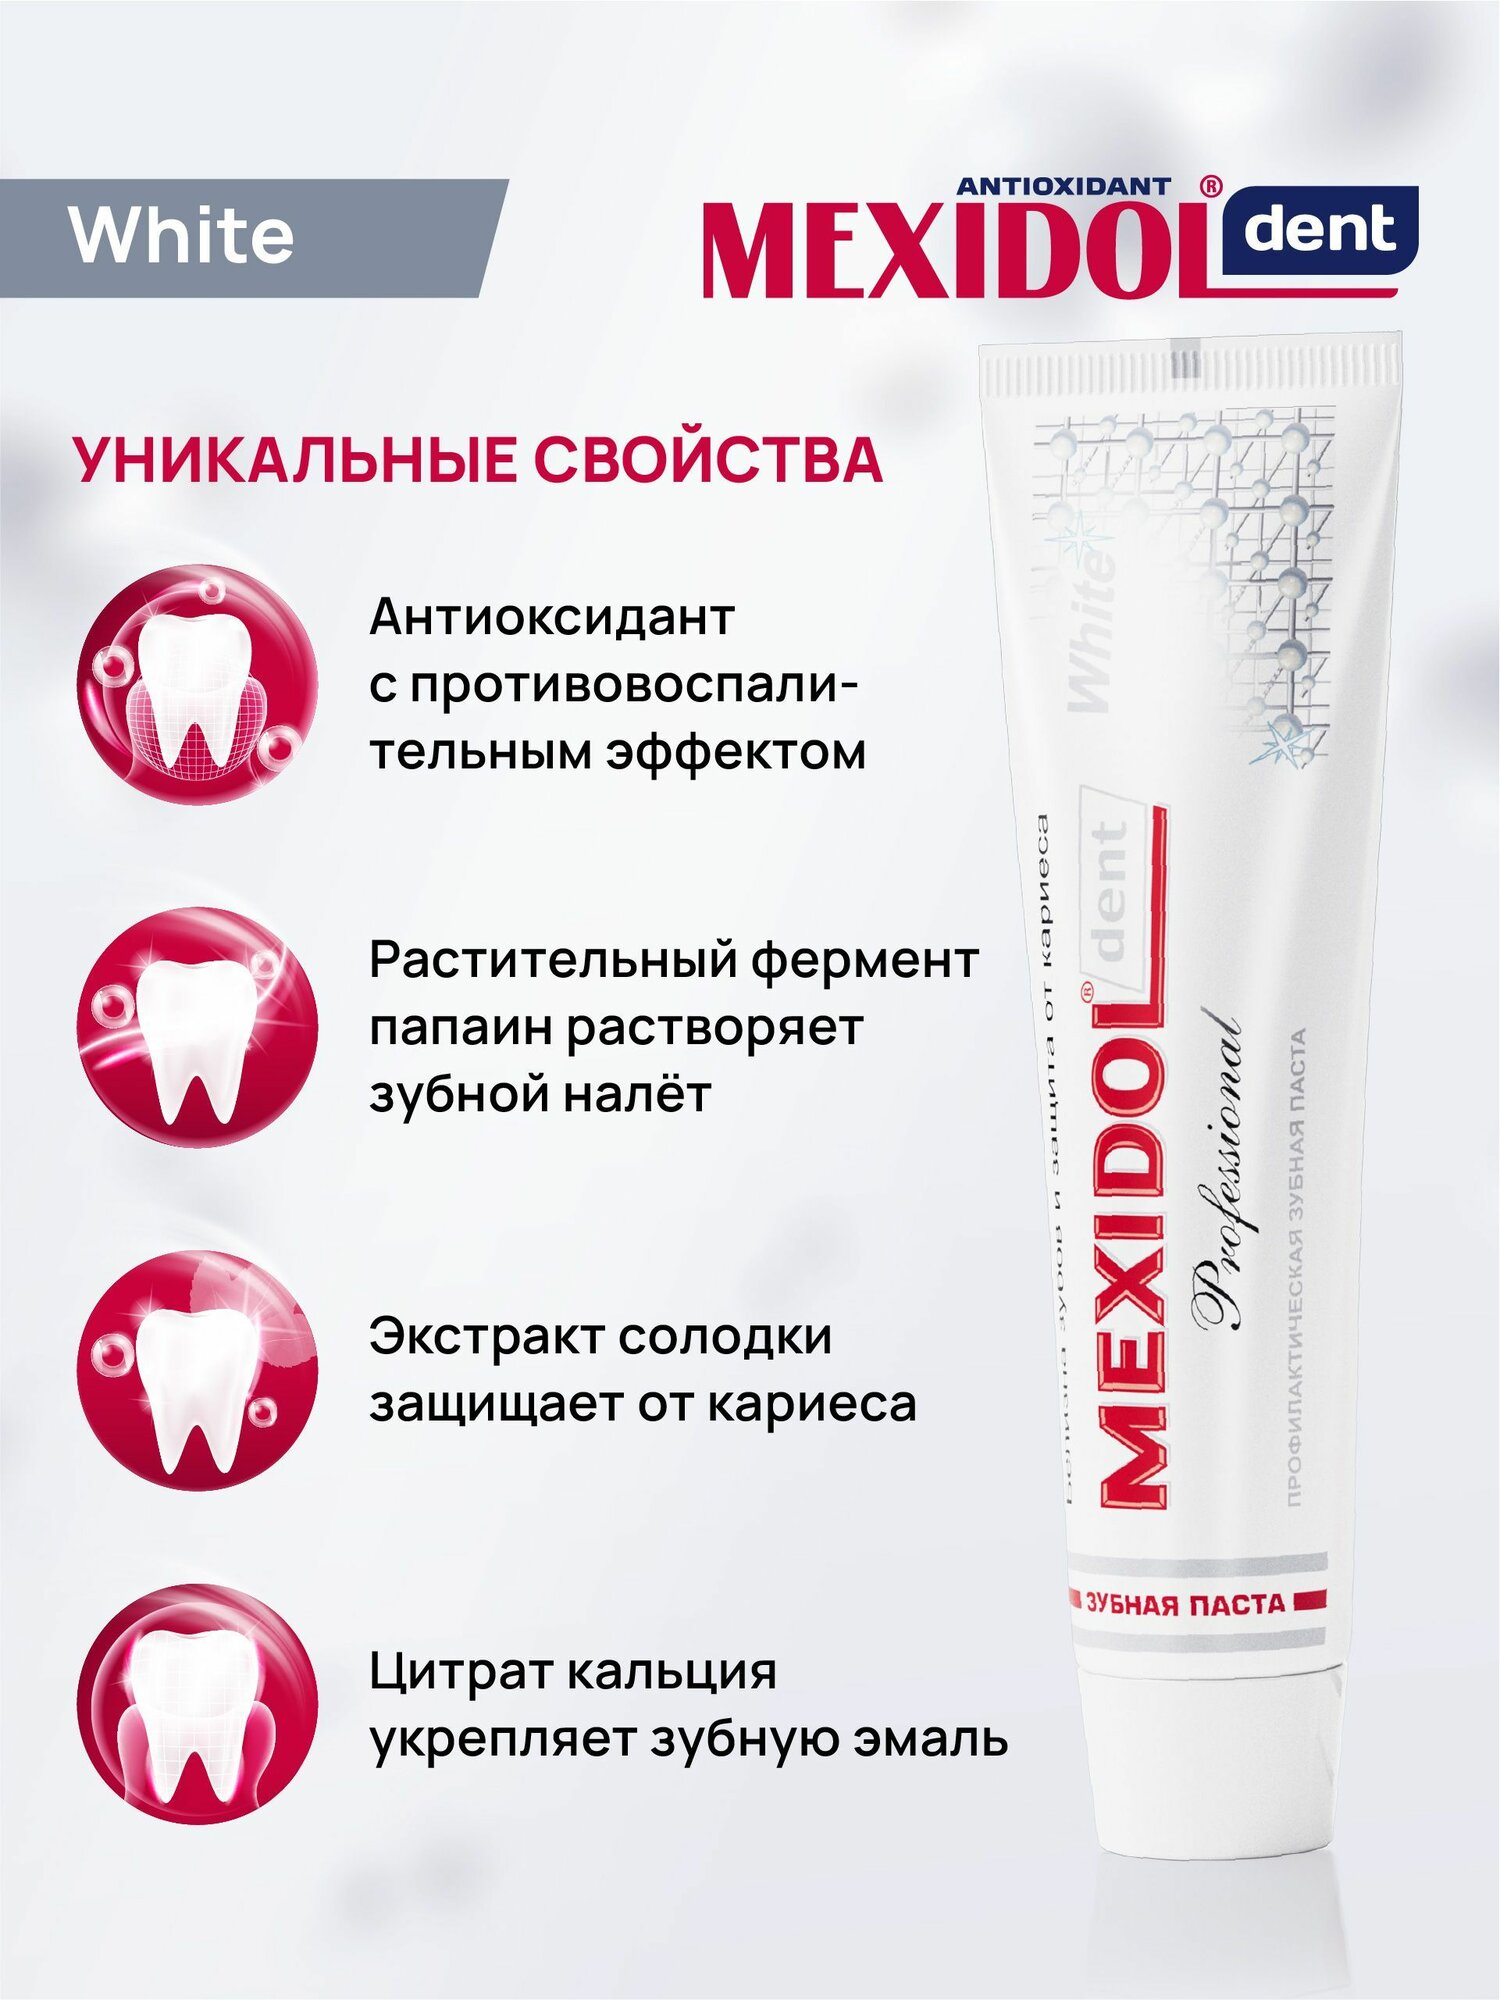 Зубная паста MEXIDOL Dent Professional White 100 г (Мексидол дент Вайт) отбеливающая с экстрактом солодки для гигиены полости рта